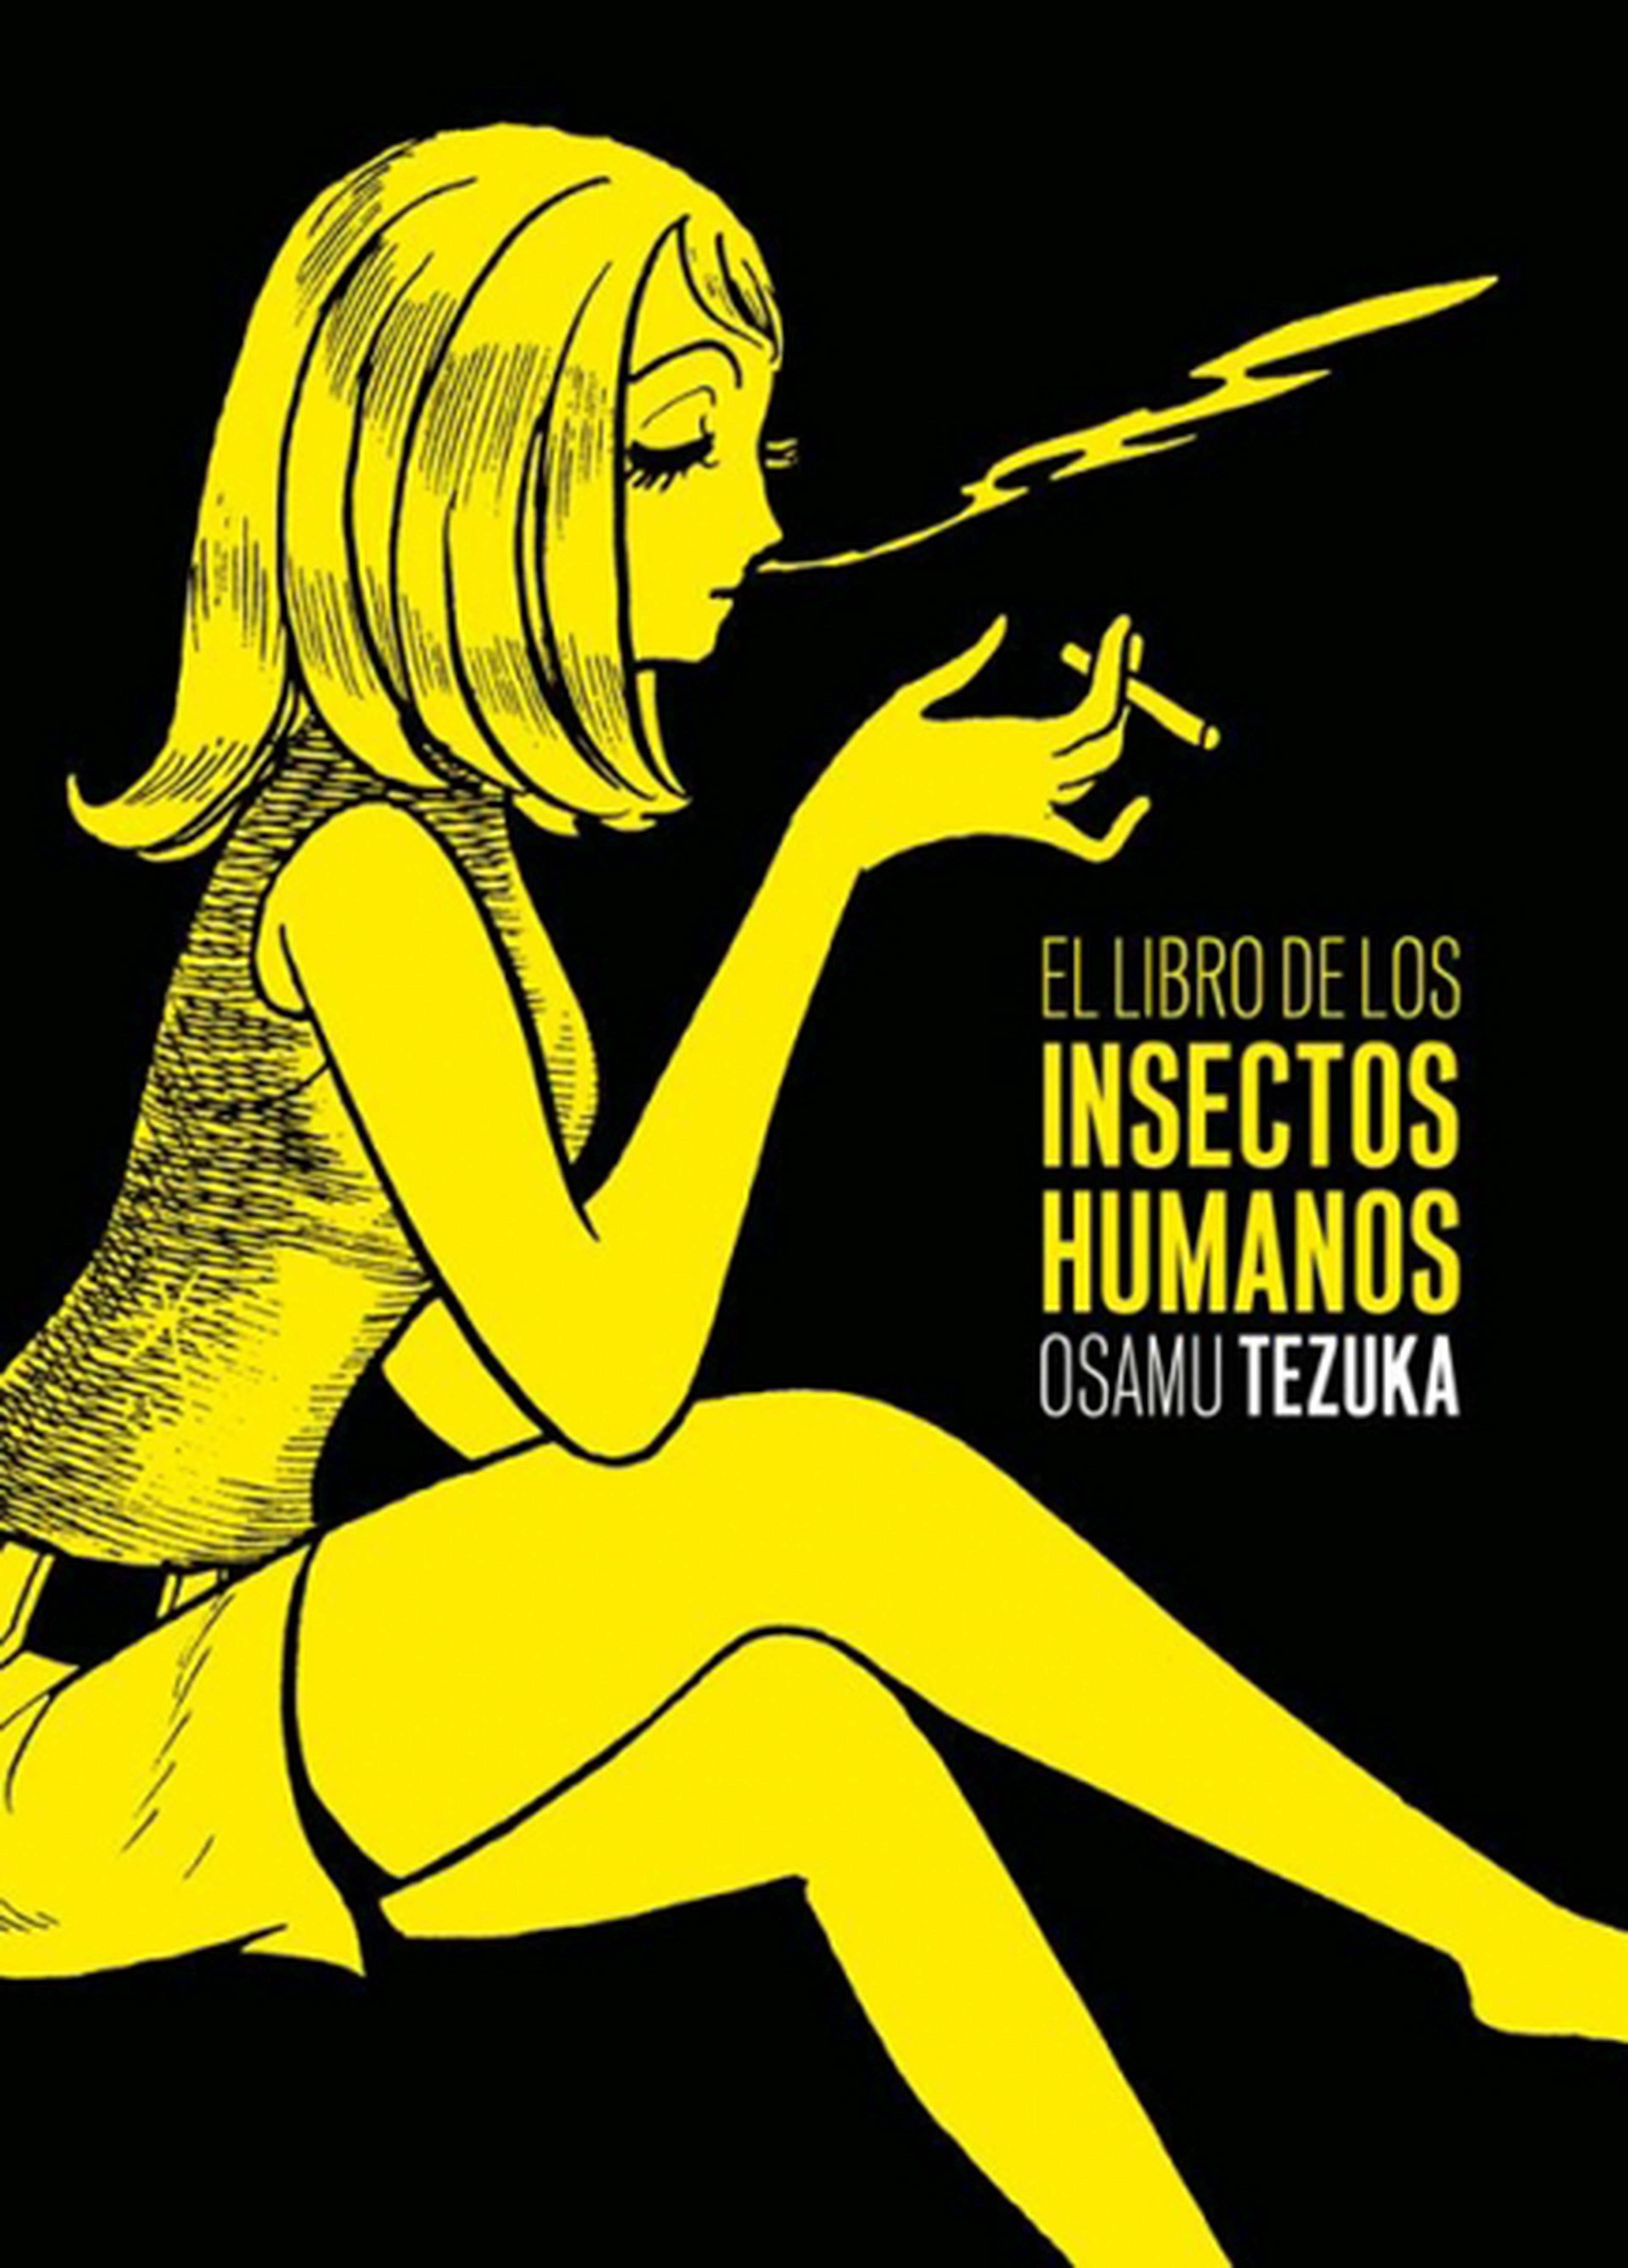 El Libro de los Insectos Humanos, de Tezuka, en julio